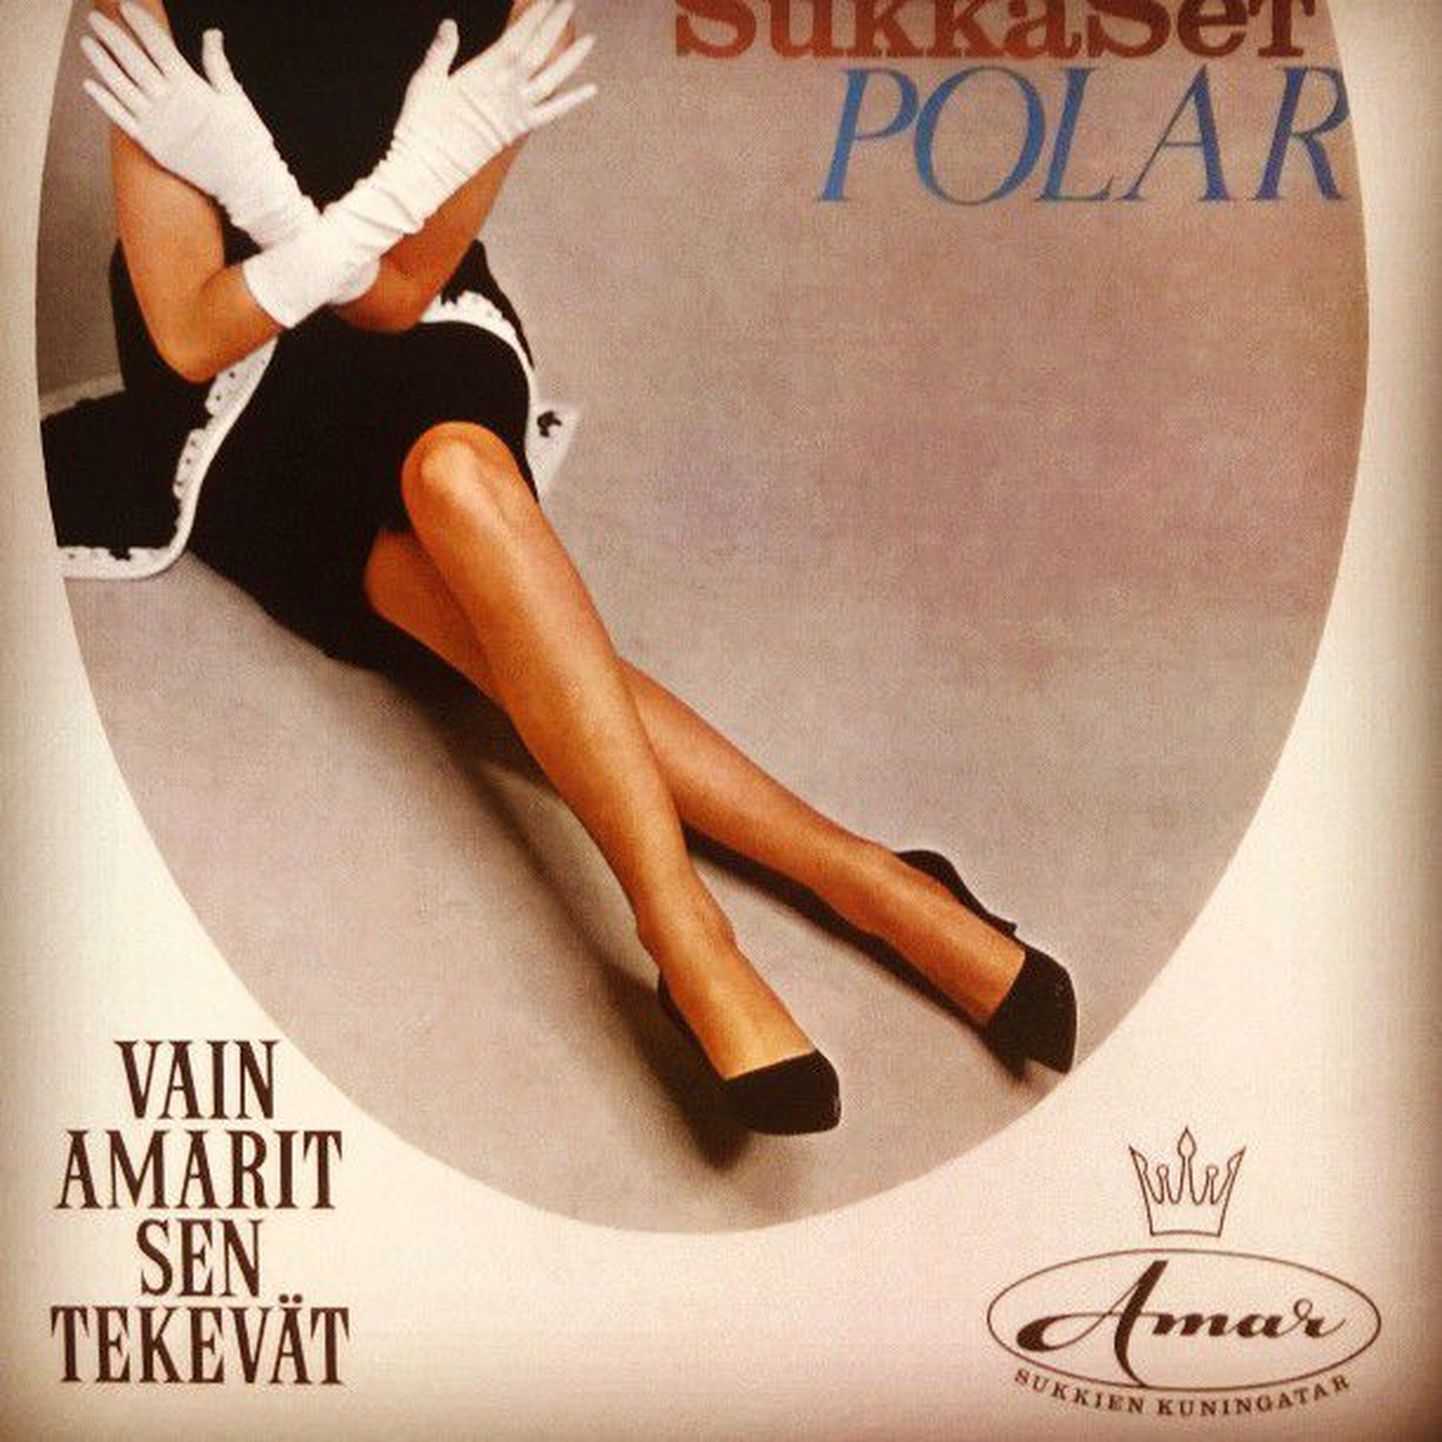 Soome esimese sukkpükstebrändi Amar pakend 60 aasta tagusest ajast.